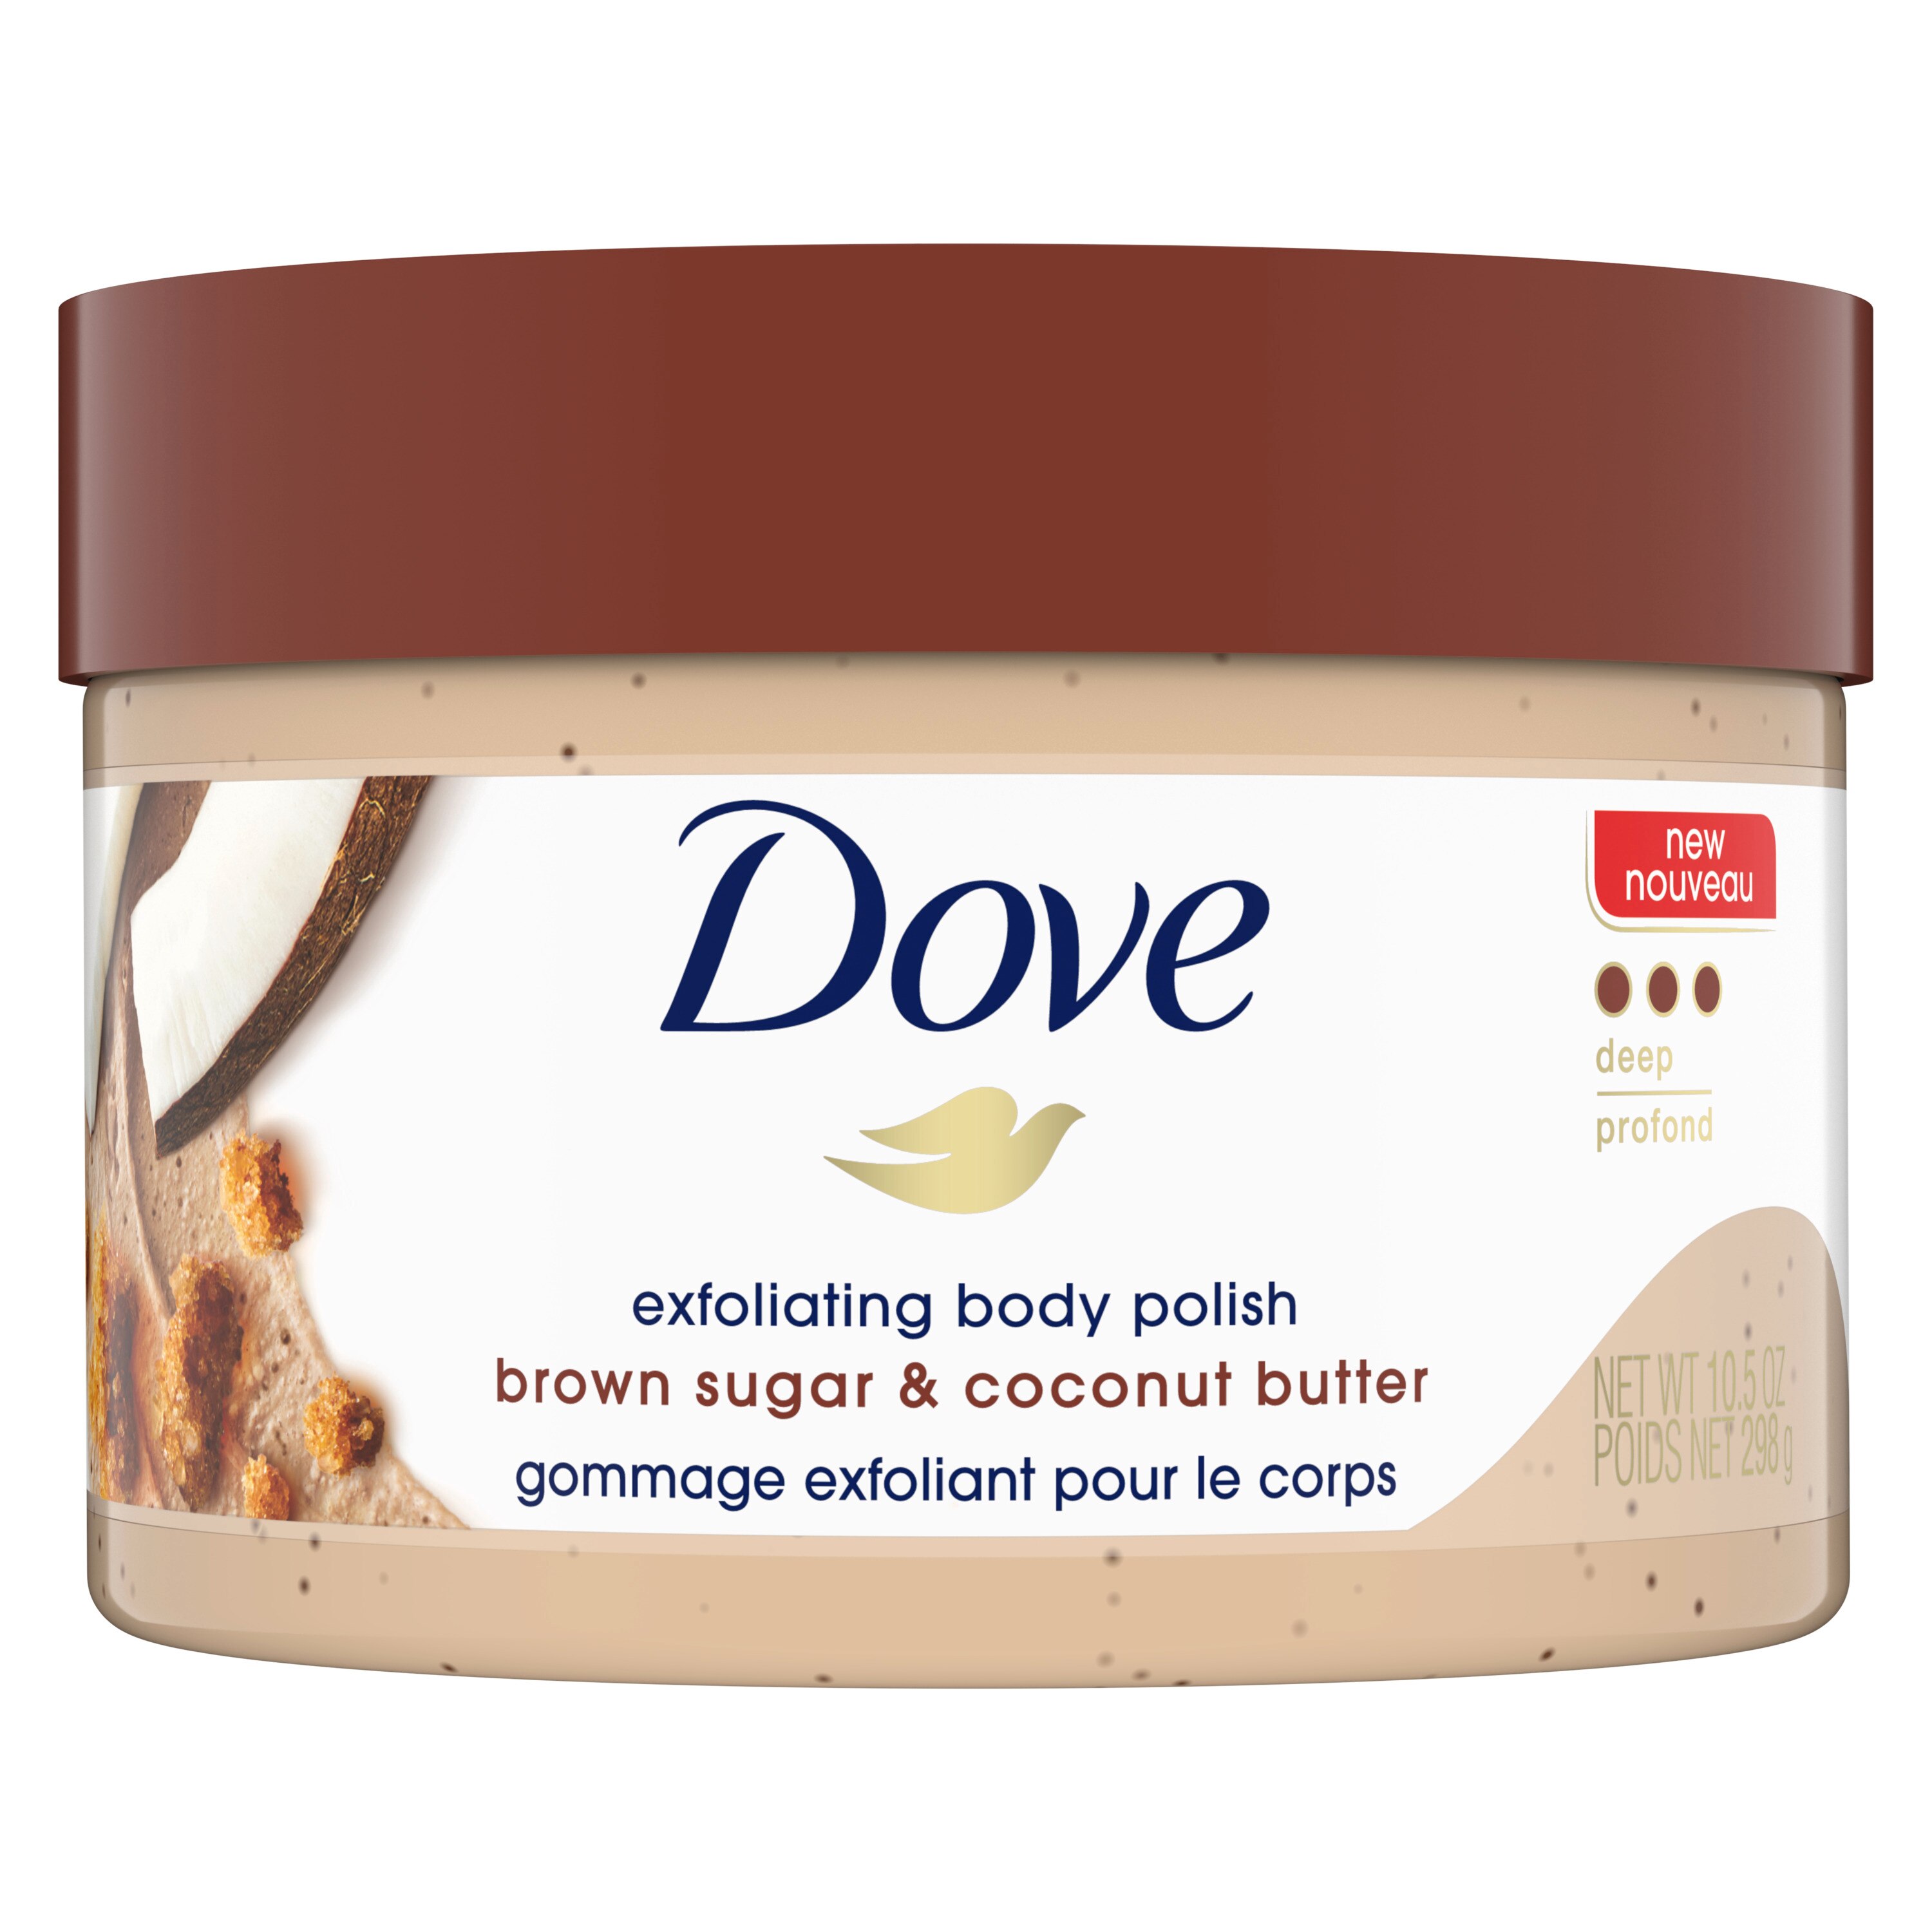 Dove Exfoliating Body Polish, Brown Sugar & Coconut Butter, 10.5 oz